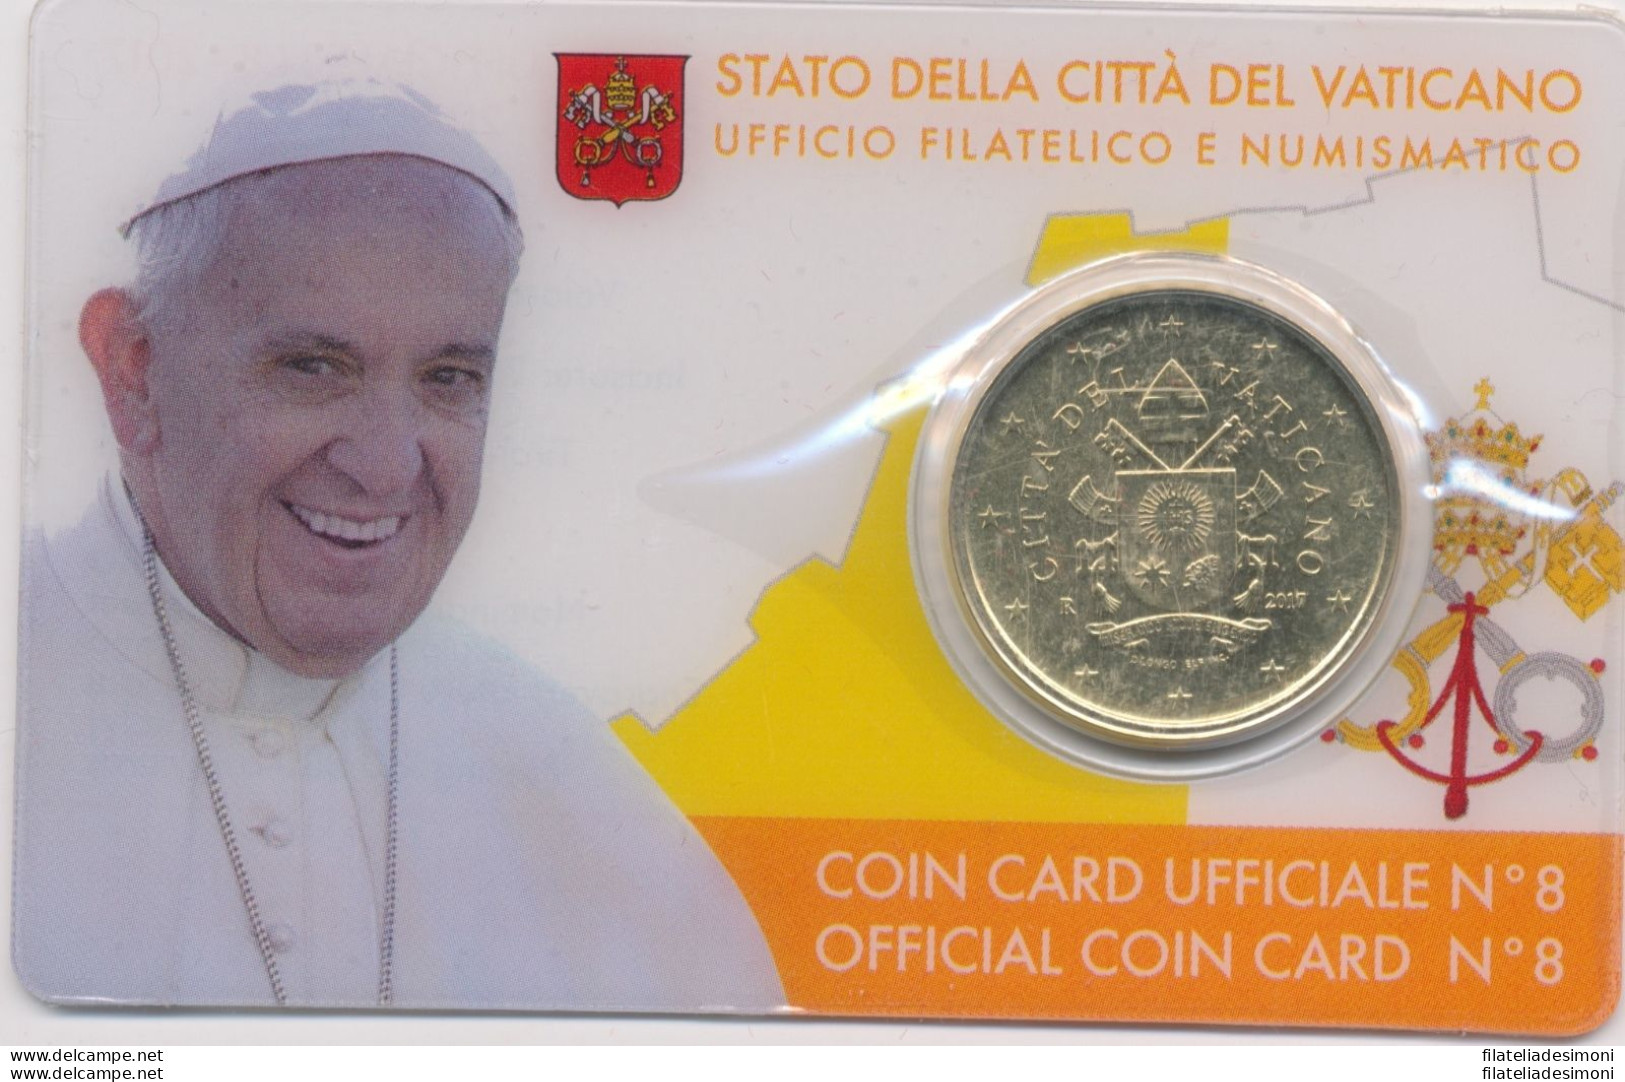 2017 Vaticano -  Coin Card  N. 8  50 Cent - Vatikan